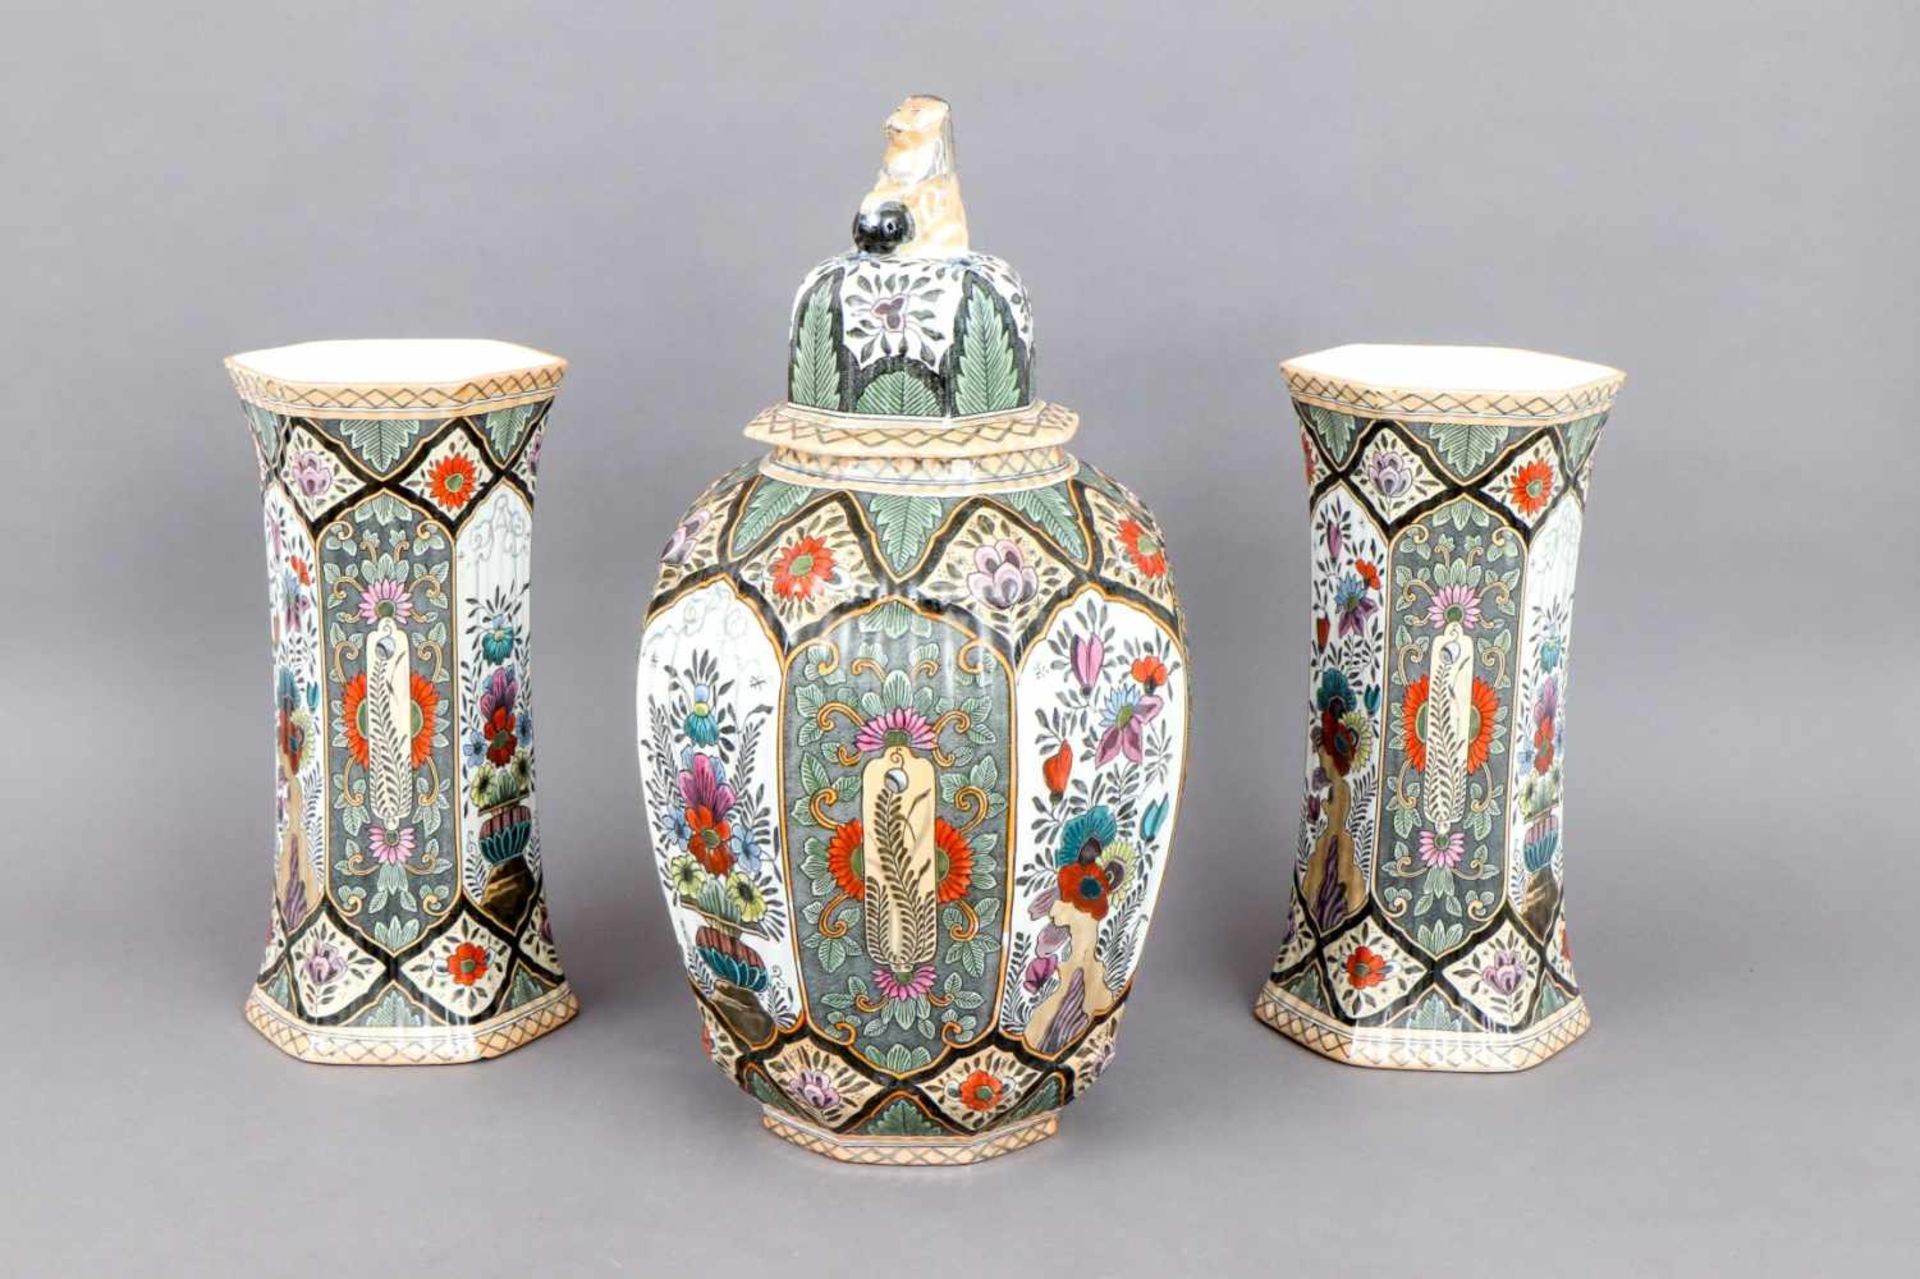 DELFT Keramik Vasen-Setum 1900/1920, 3-teilig, bestehend aus 1 Deckelvase und 2 6-Kant-Vasen, - Image 2 of 4